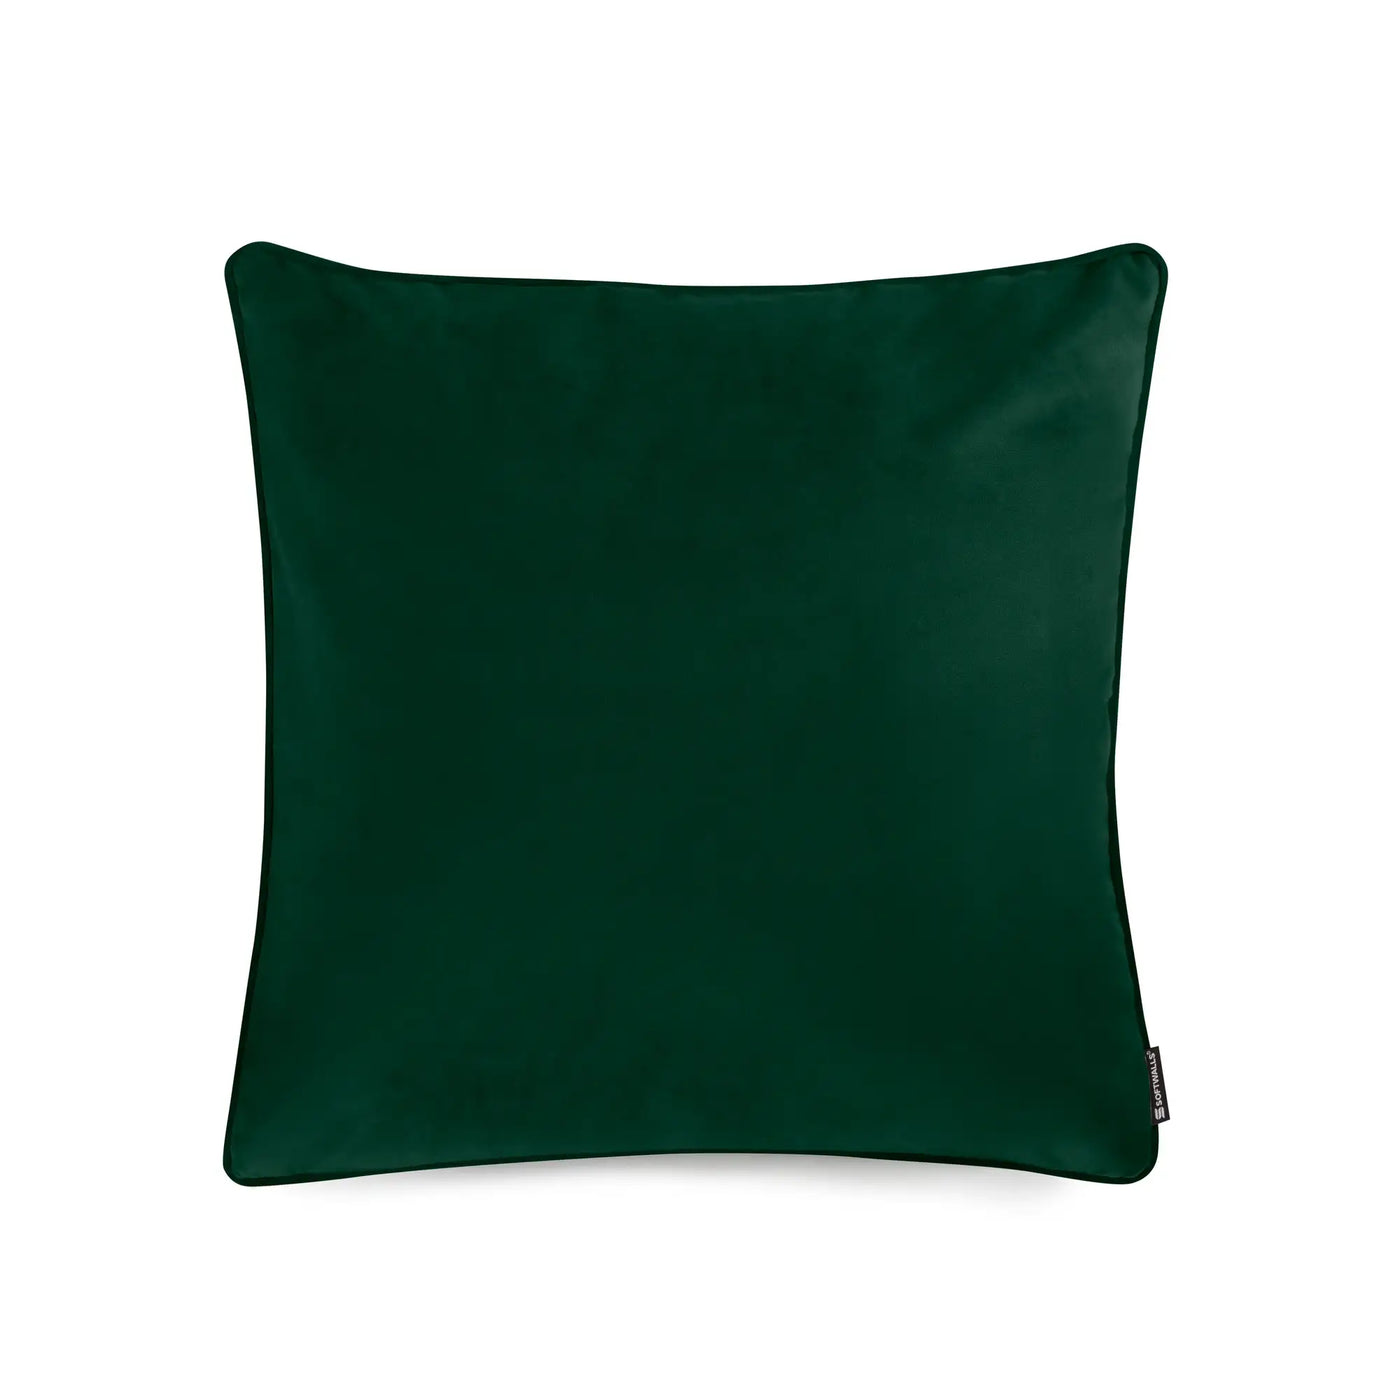 Kissenhülle Samt in der Größe 50 x 50 cm und der Farbe Grün.